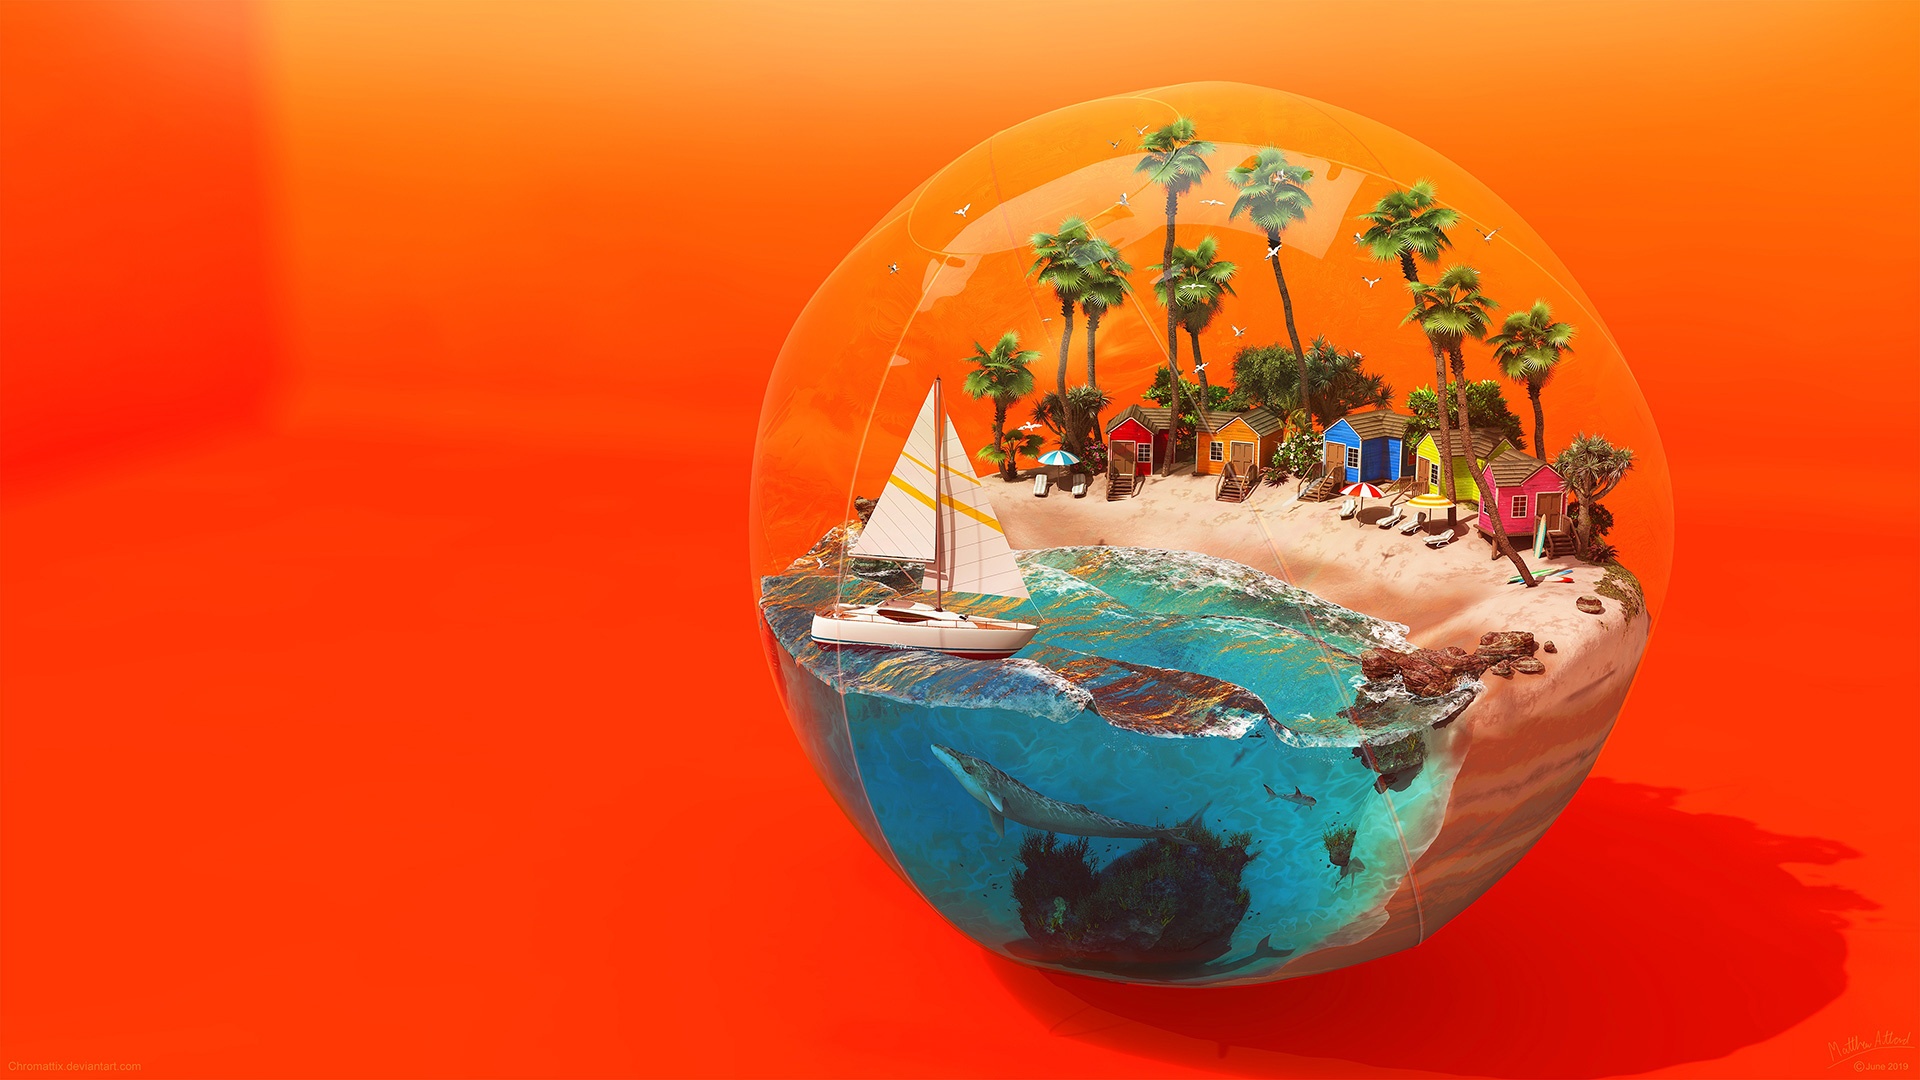 General 1920x1080 beach sea fish trees sailing ship sphere artwork digital art orange beach ball